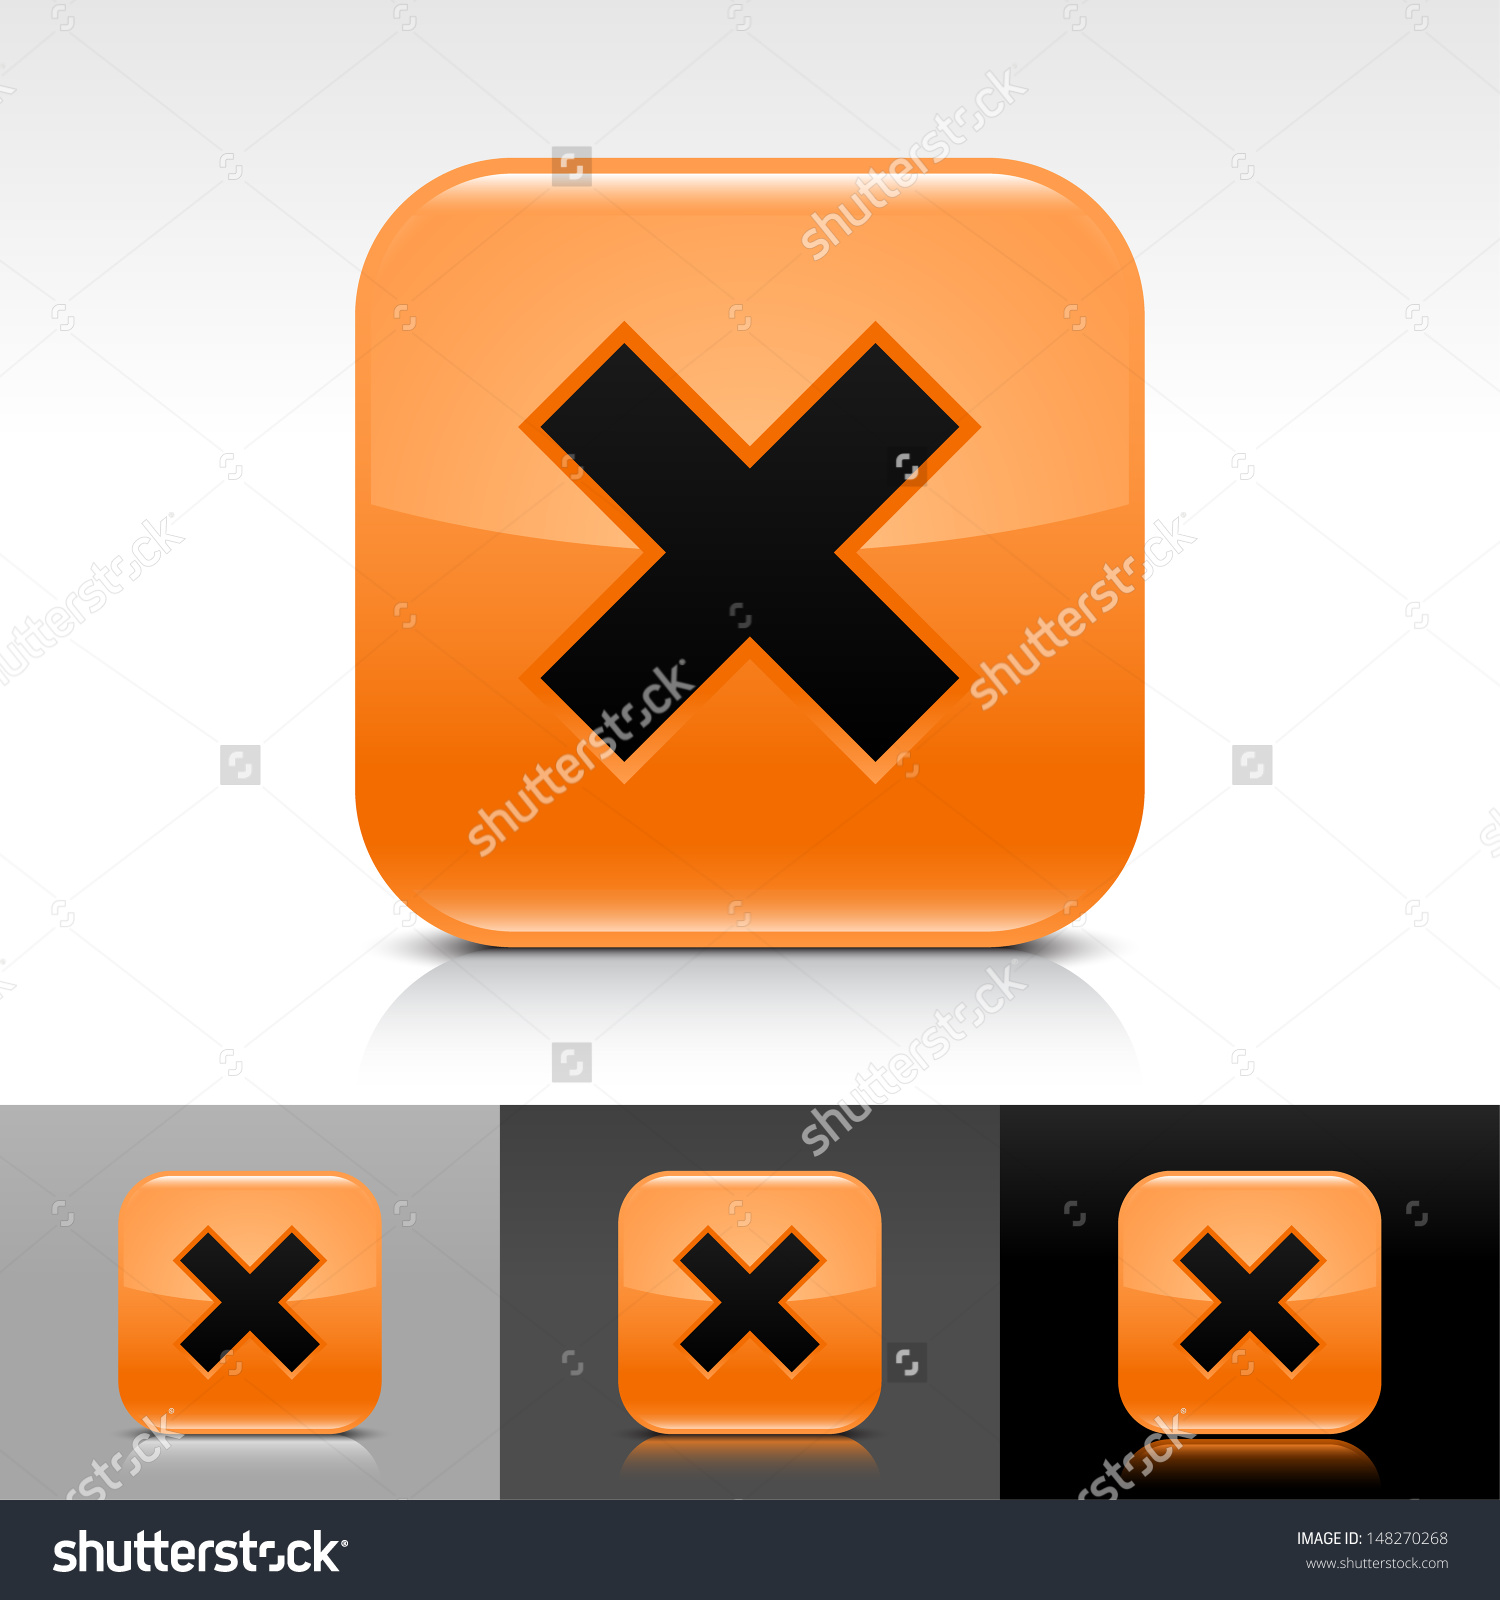 Delete icon set Orange color glossy web button with black sign